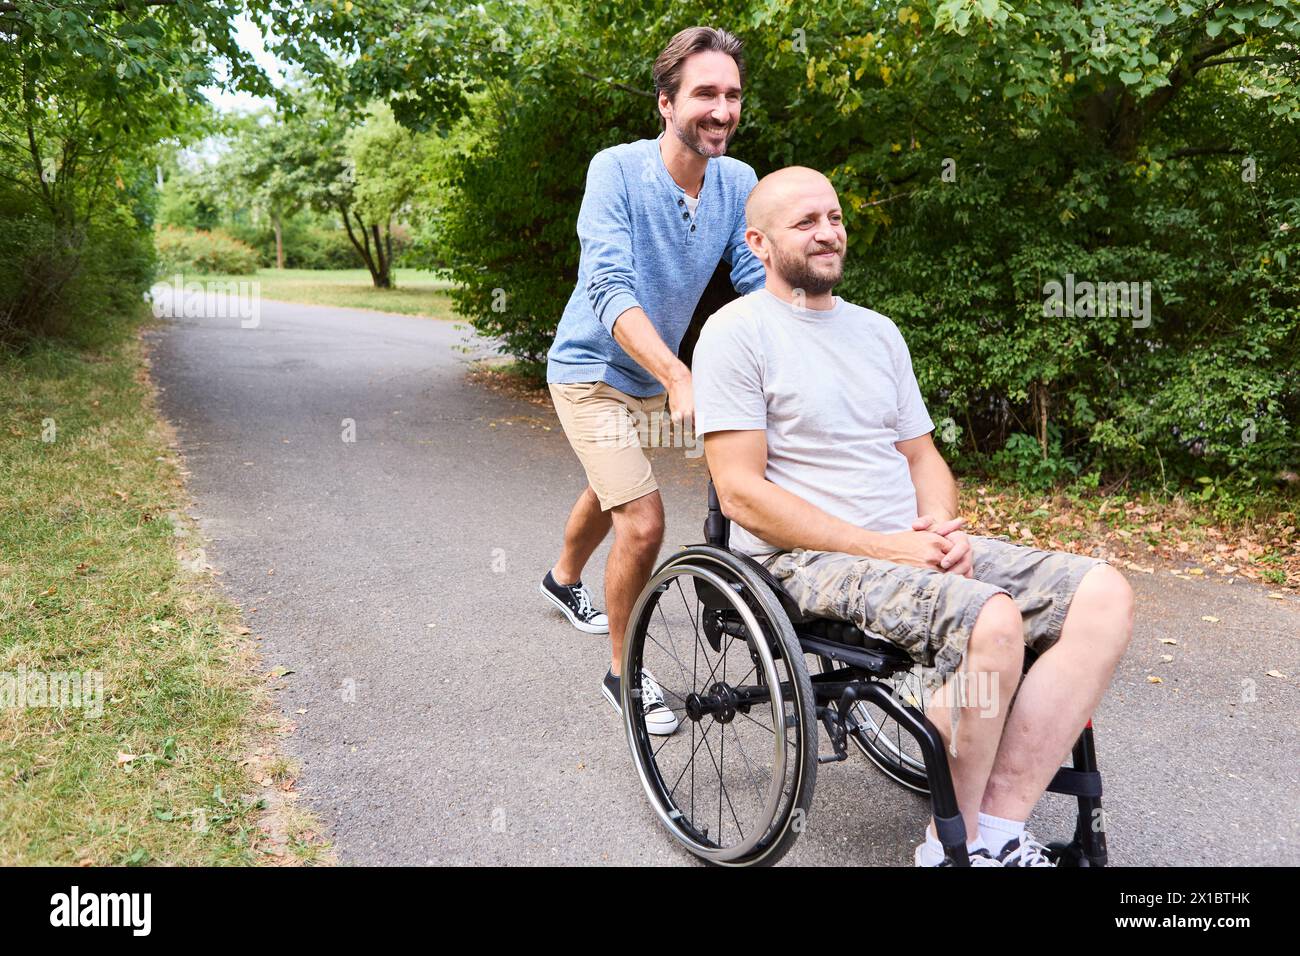 Ein fröhlicher Moment, in dem eine Person mit einem Rollstuhl und sein Freund an einem sonnigen Tag im Park lachen und Inklusion und Freundschaft hervorheben. Stockfoto